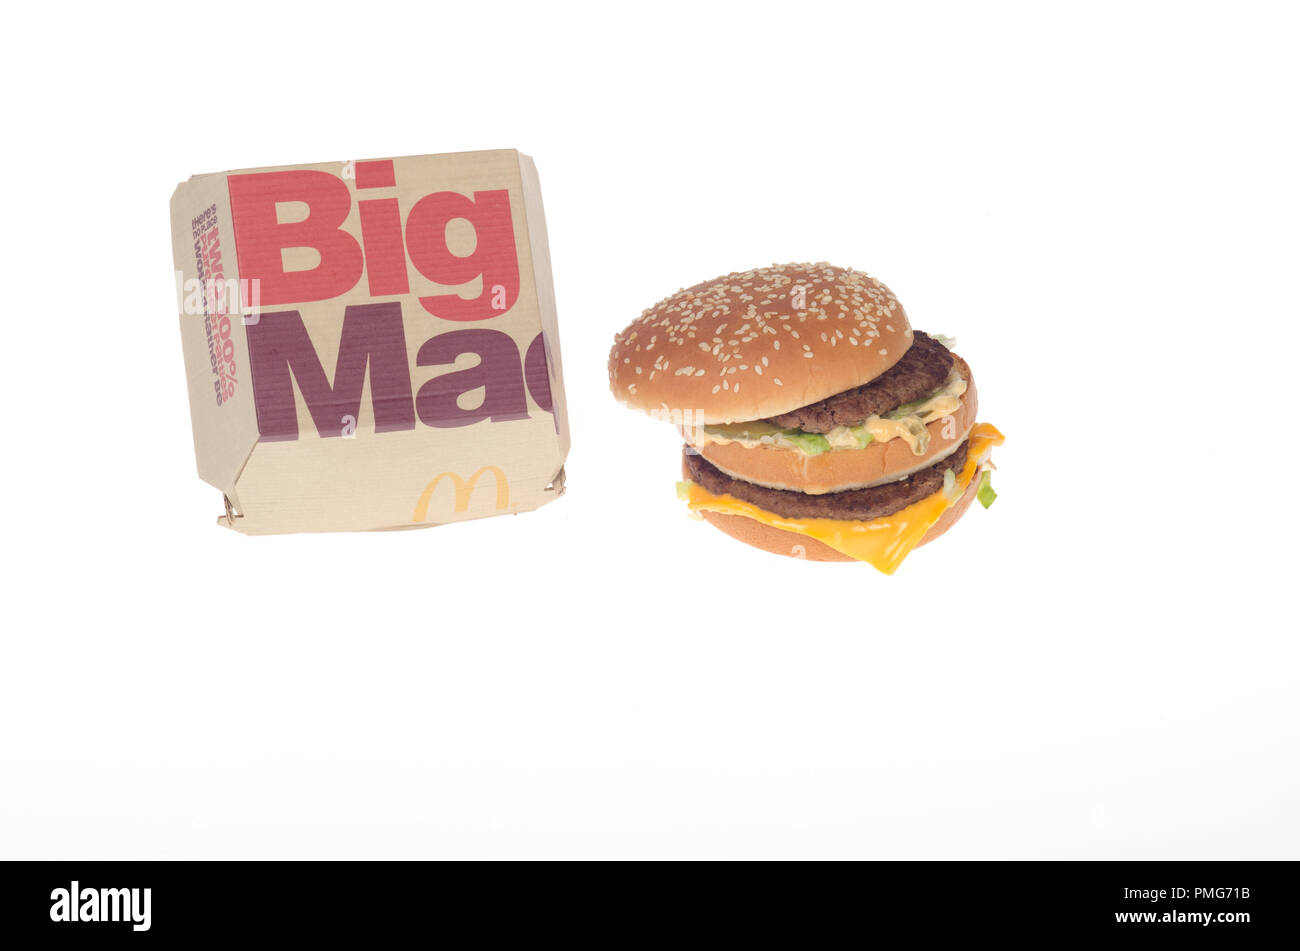 Hamburguesa de McDonald's Big Mac con 2 empanadas de carne, salsa especial, lechuga y queso en un panecillo con semillas de sésamo el takeout caja el contenedor Foto de stock